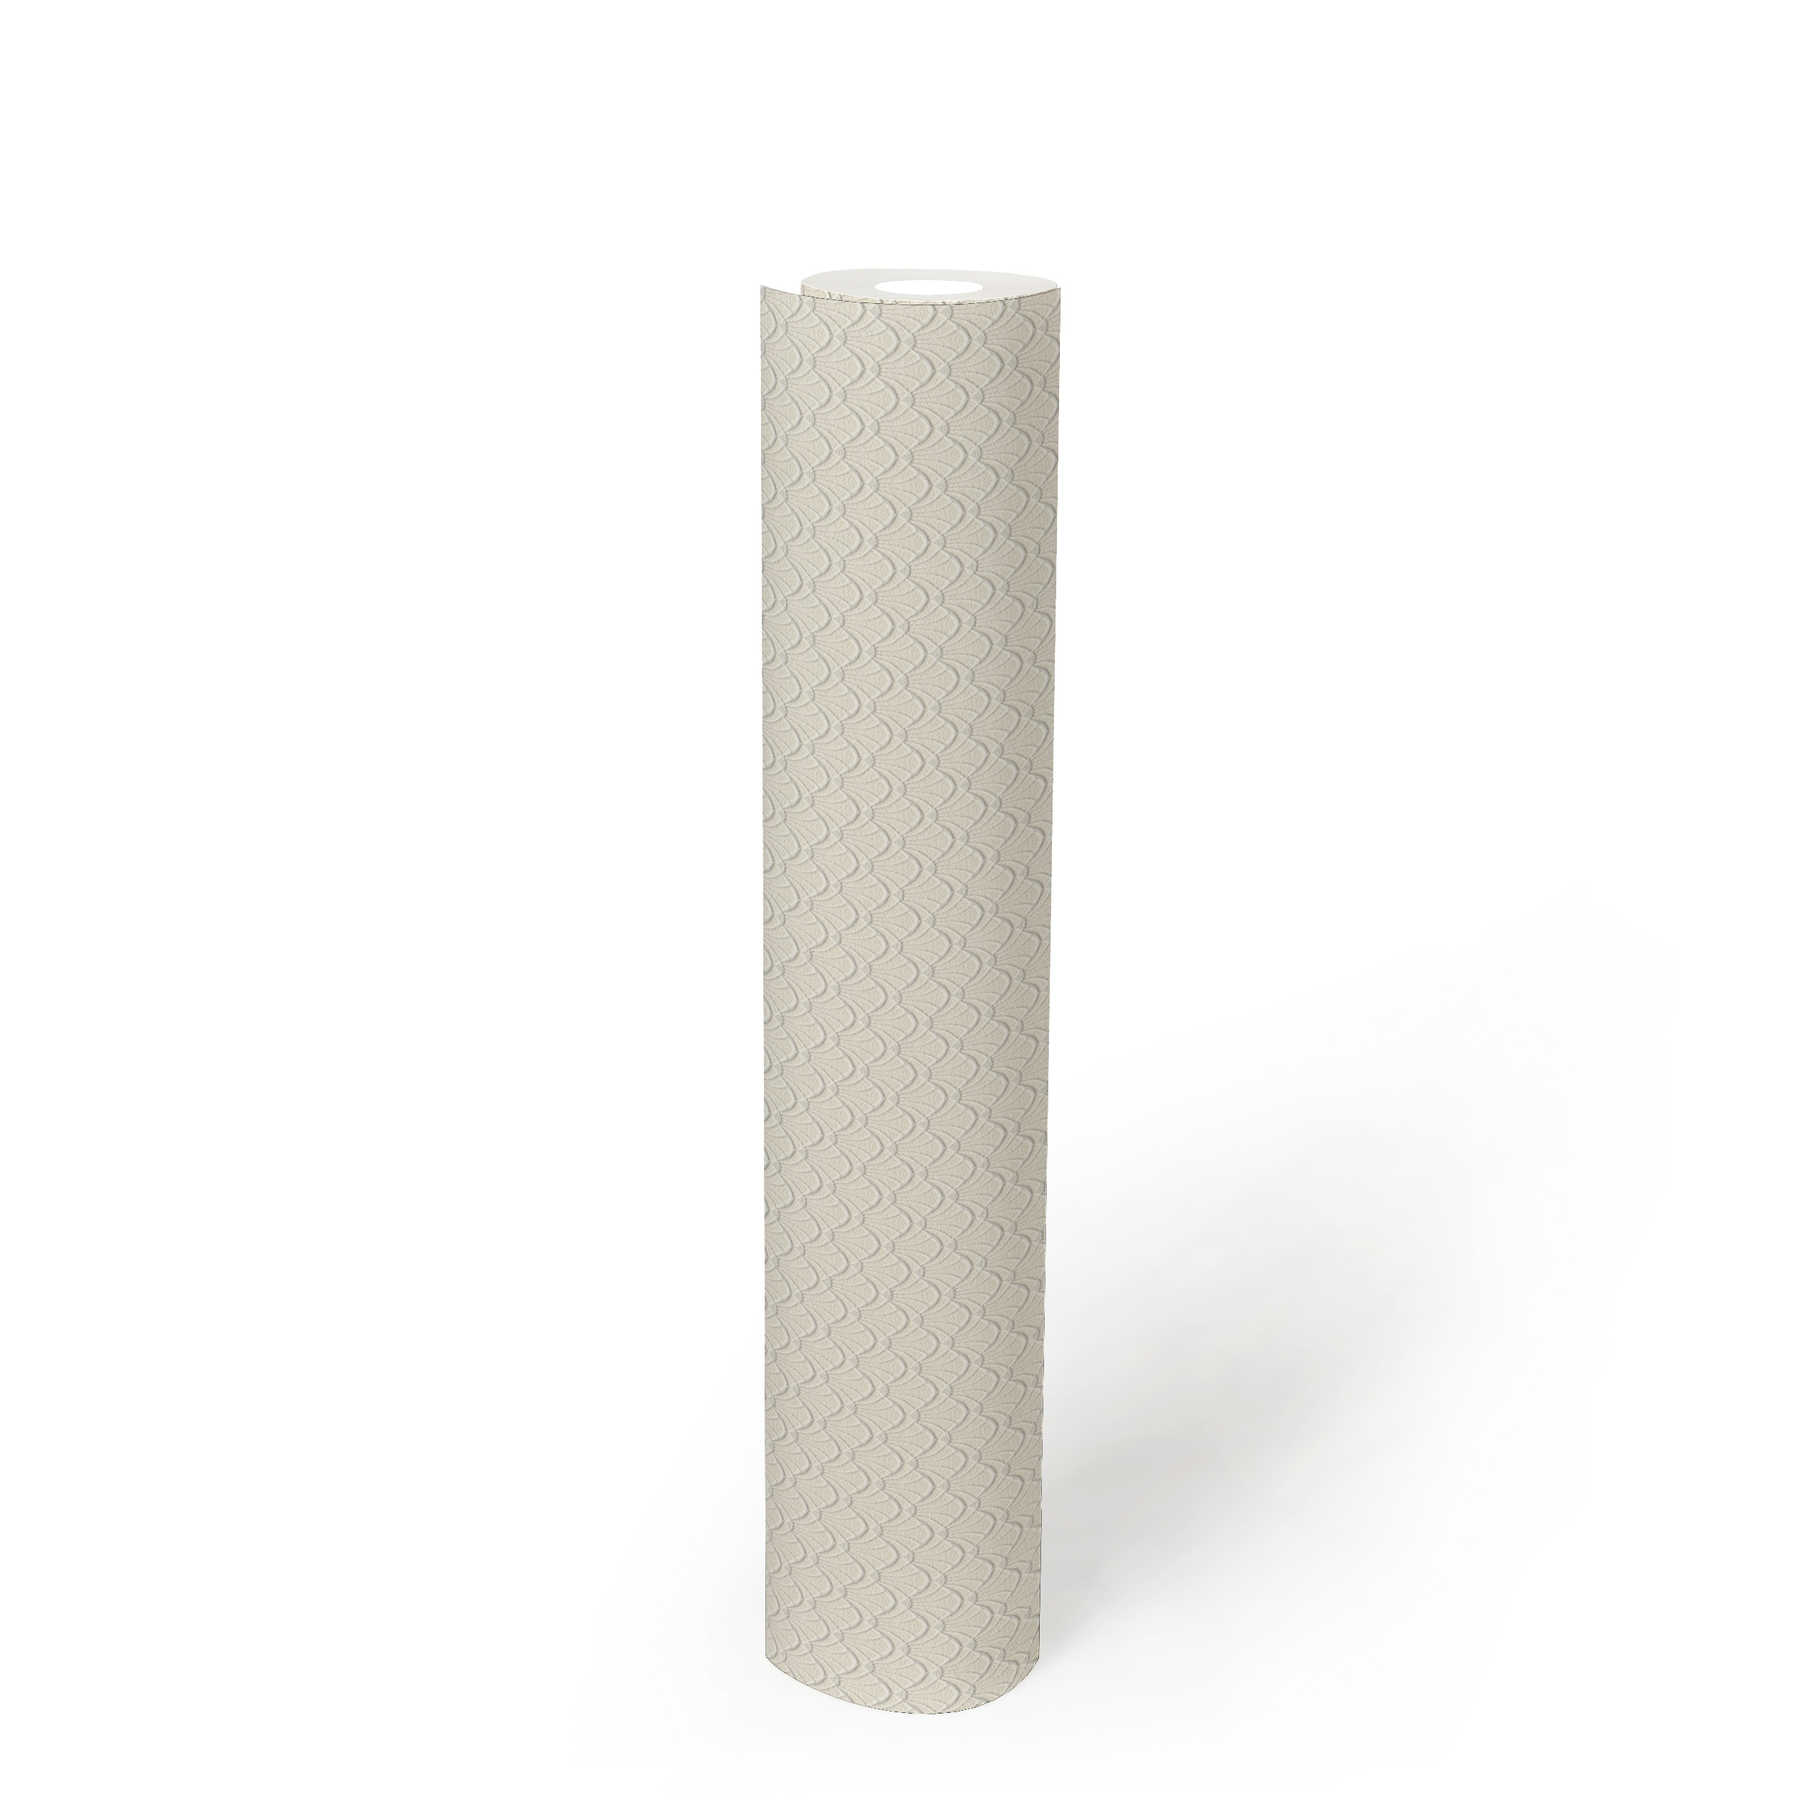             behangpapier filigraan structuurpatroon in schelpmotief - crème, wit
        